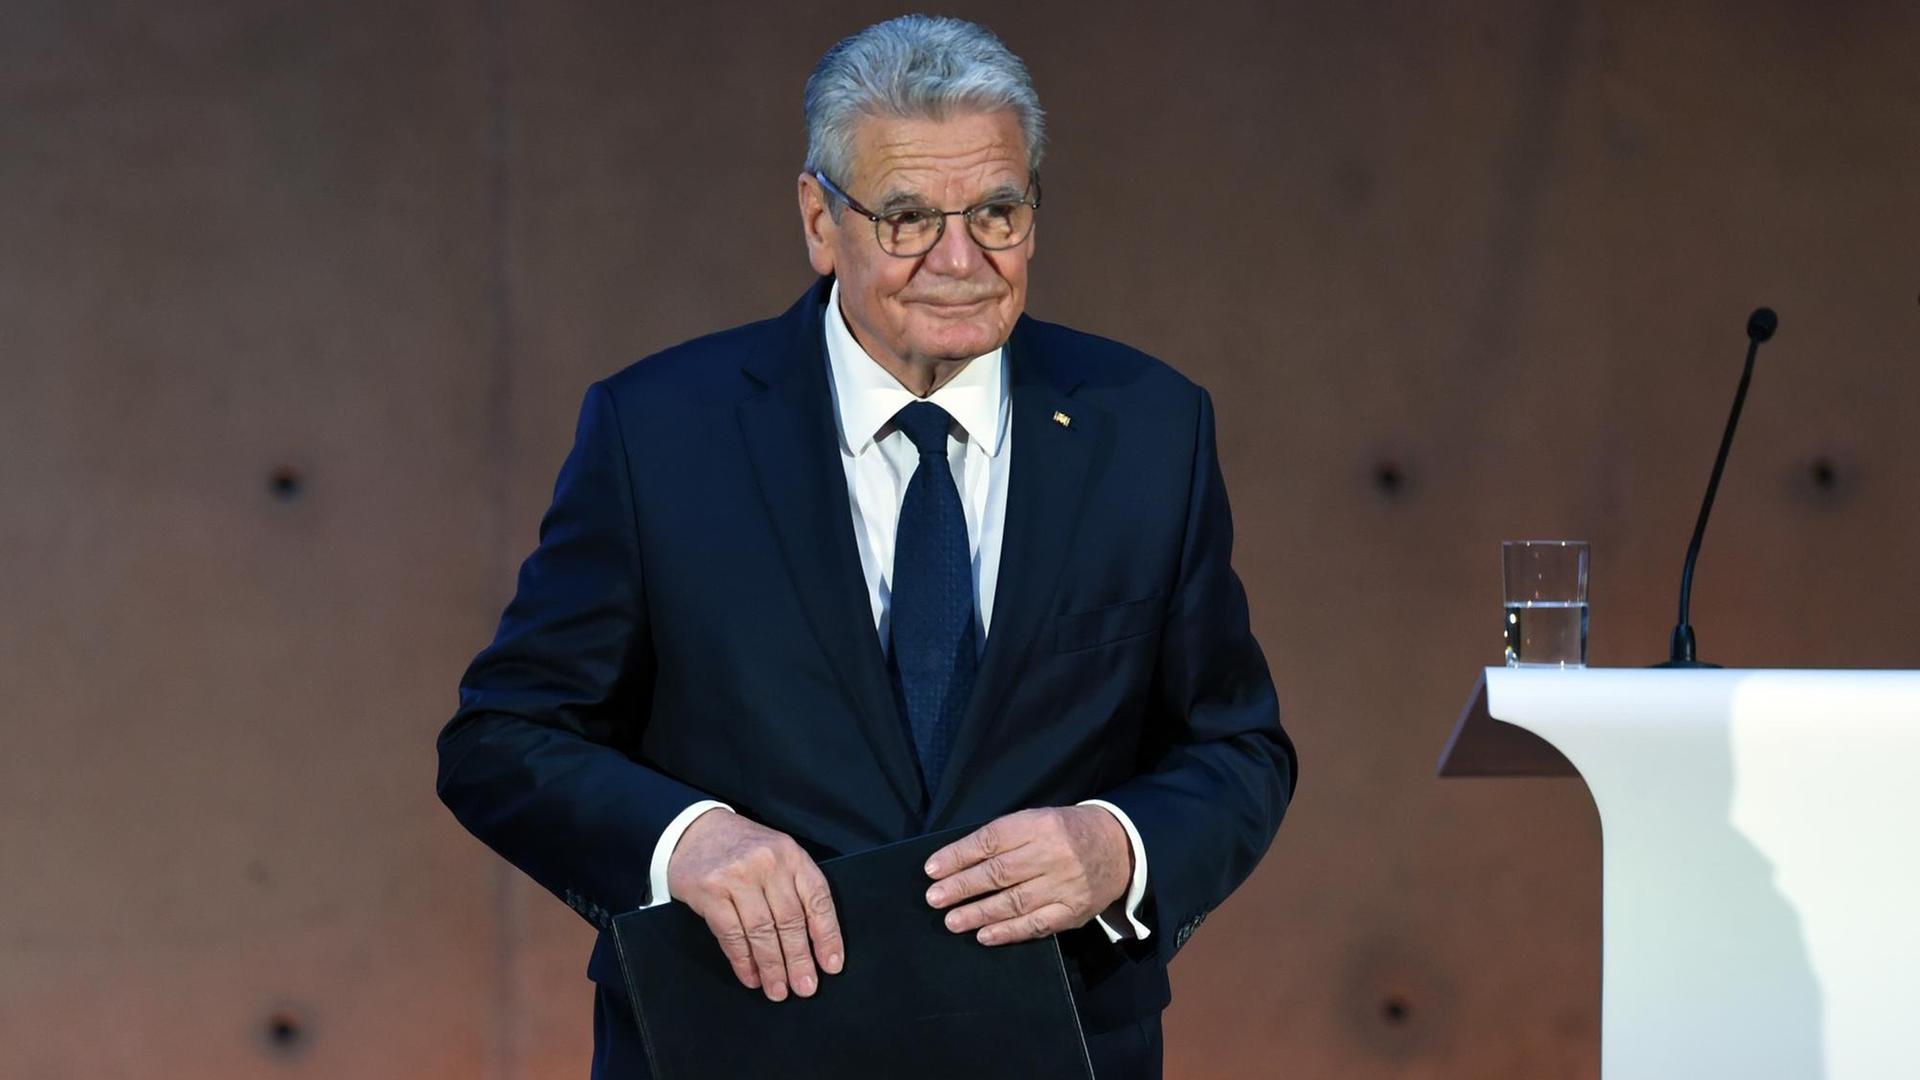 Bundespräsident Joachim Gauck hält in Berlin eine Rede bei einem Festakt zum 60. Geburtstag des Deutschen Presserats.